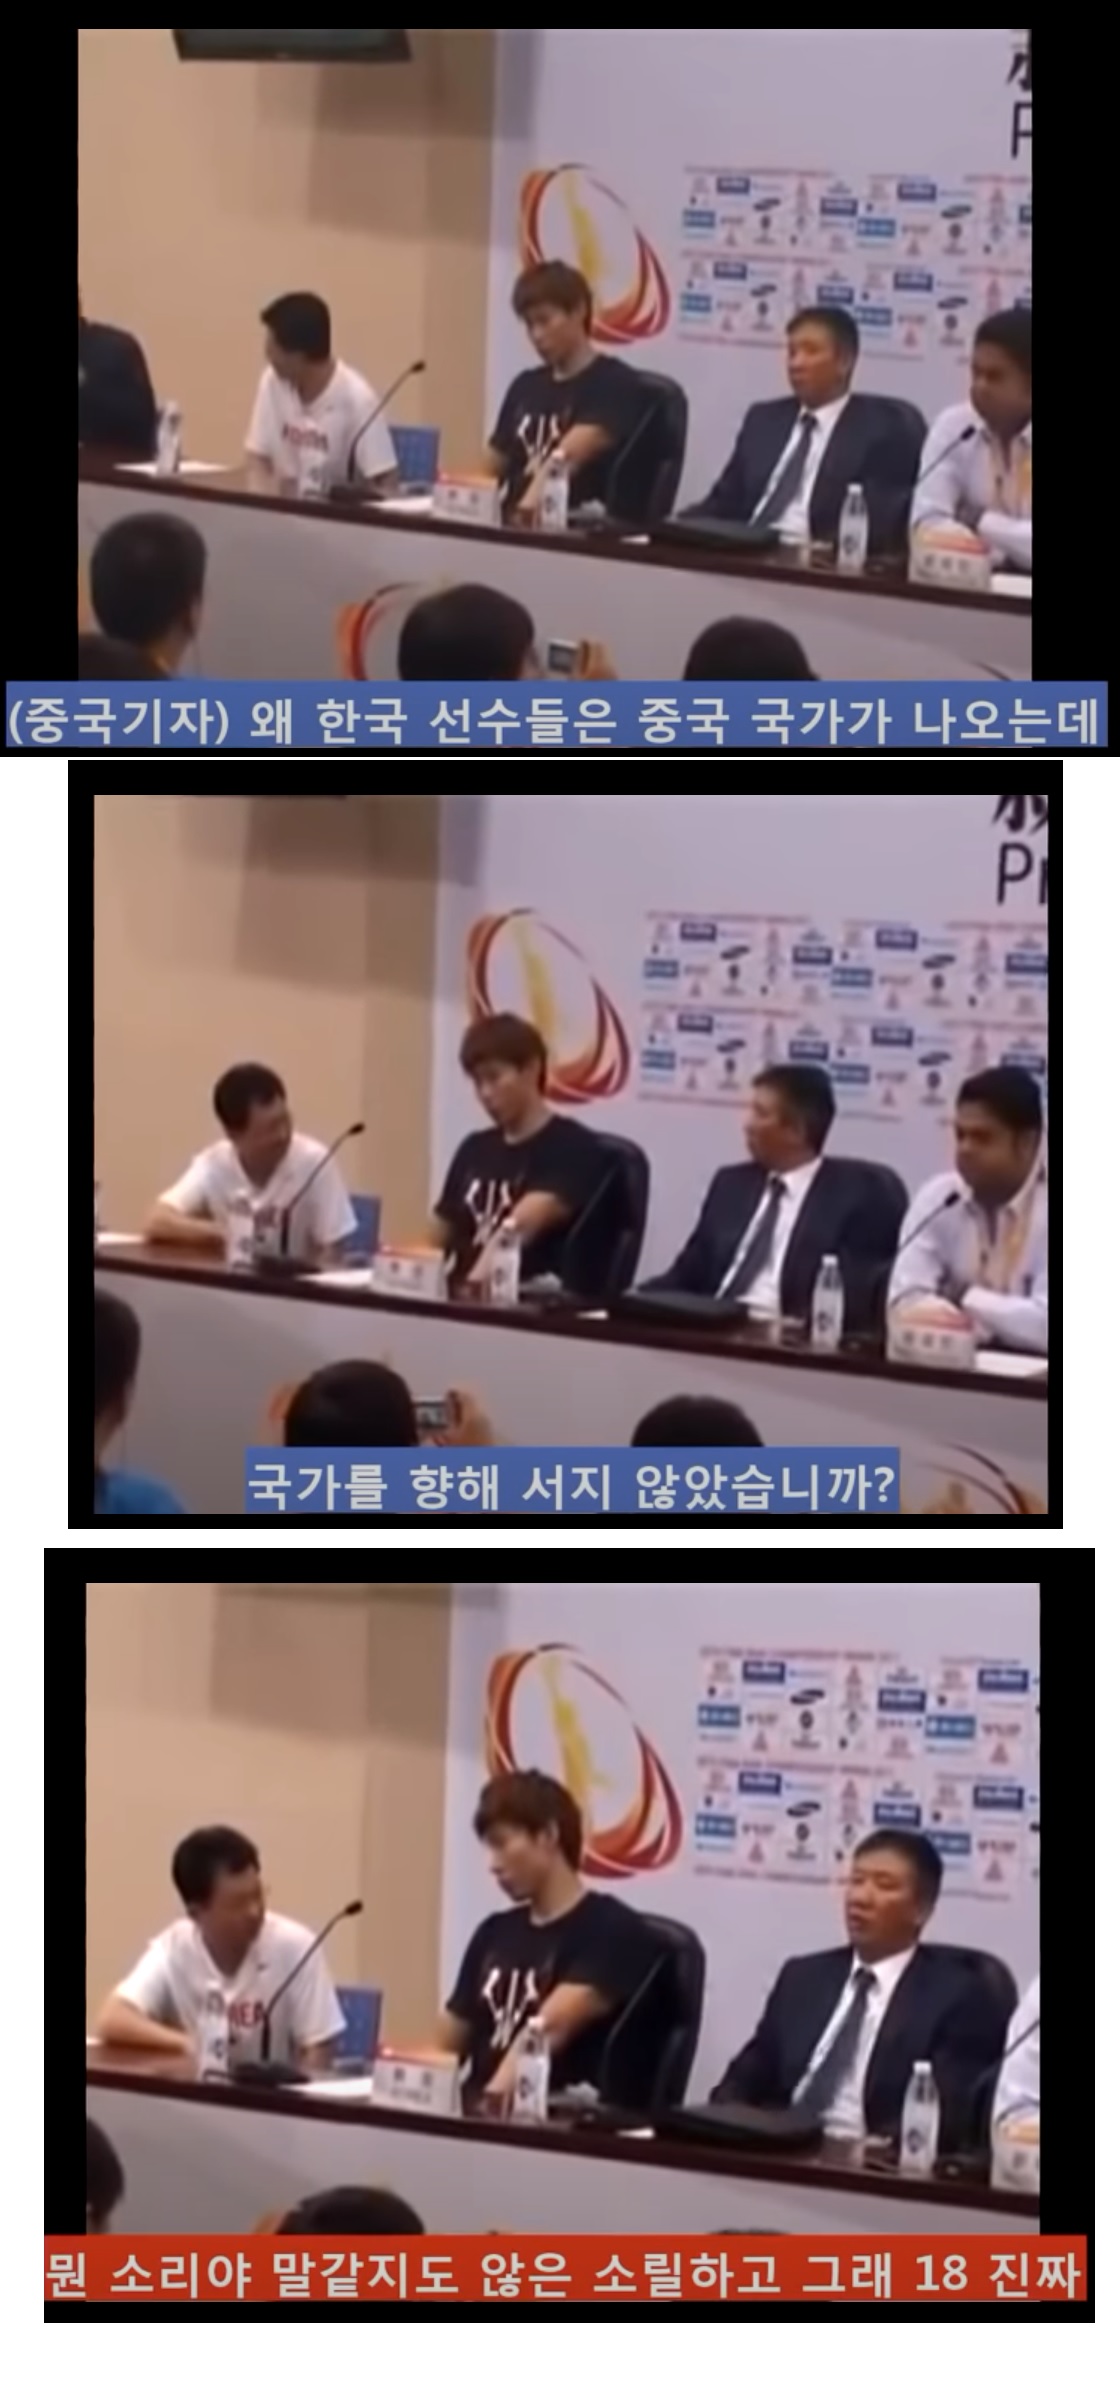 ???: 왜 한국선수들은 중국국가가 나오는데 기립하지 않는가